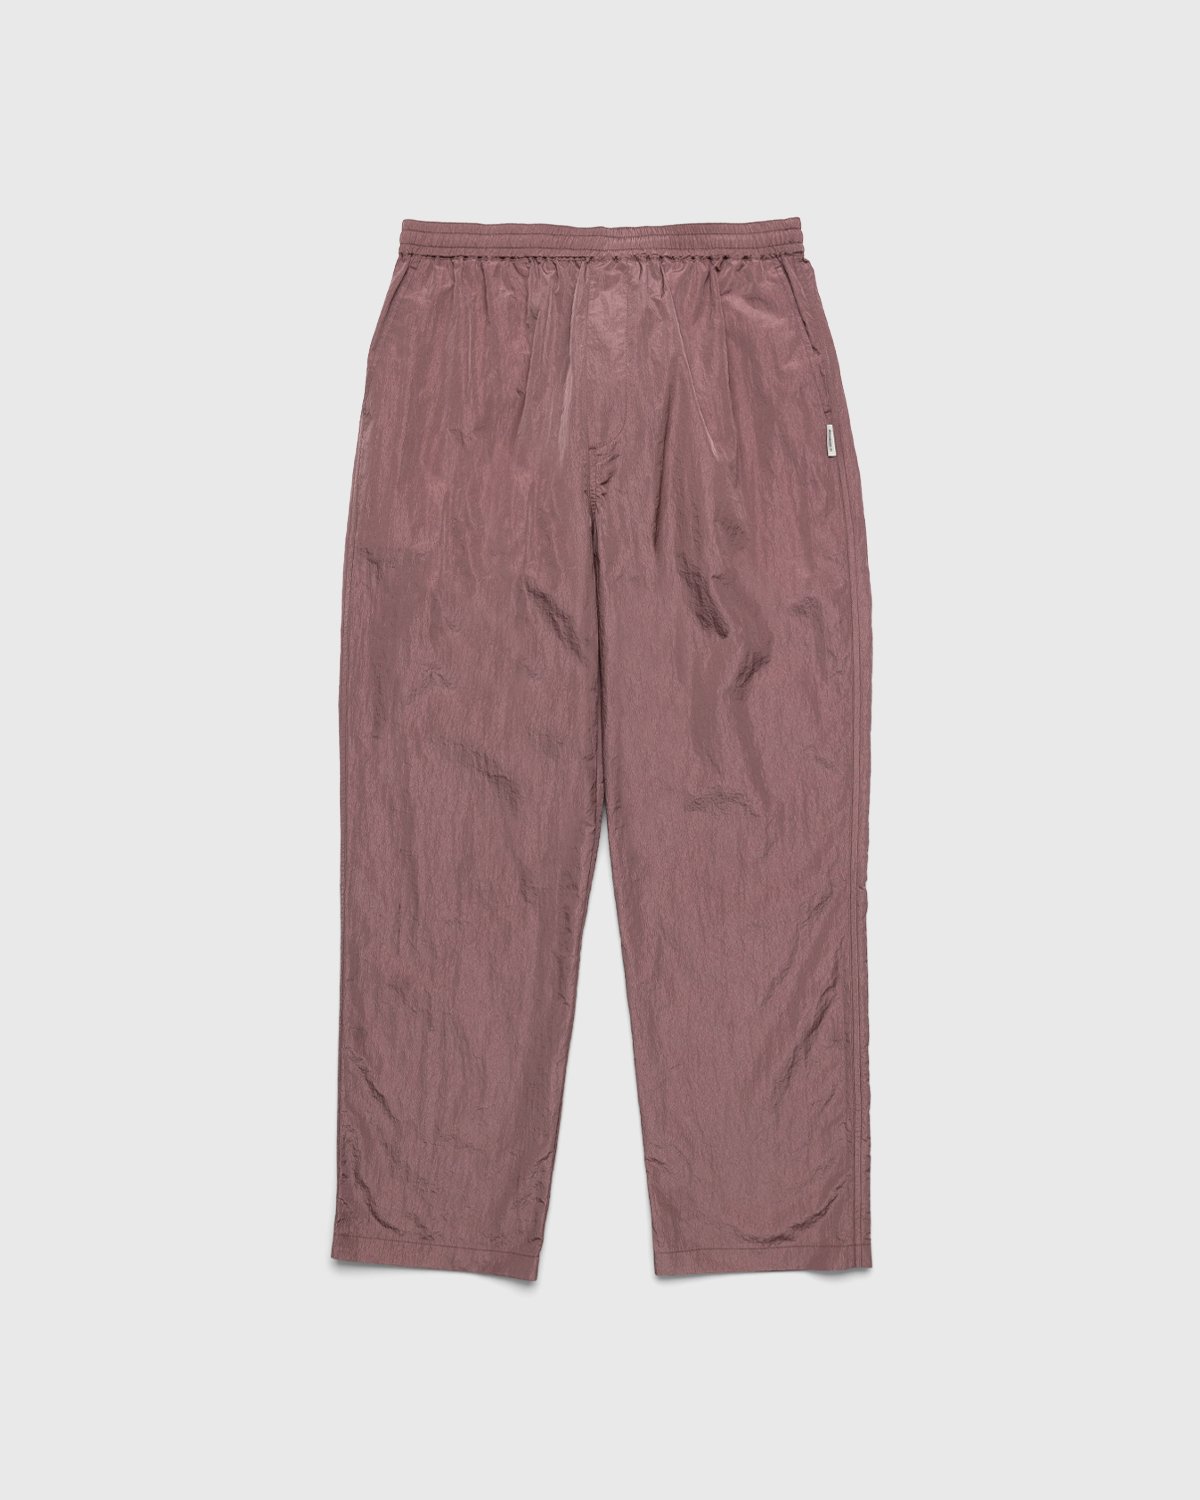 Highsnobiety - Crepe Nylon Elastic Pants Rose Gold - Clothing - Pink - Image 1